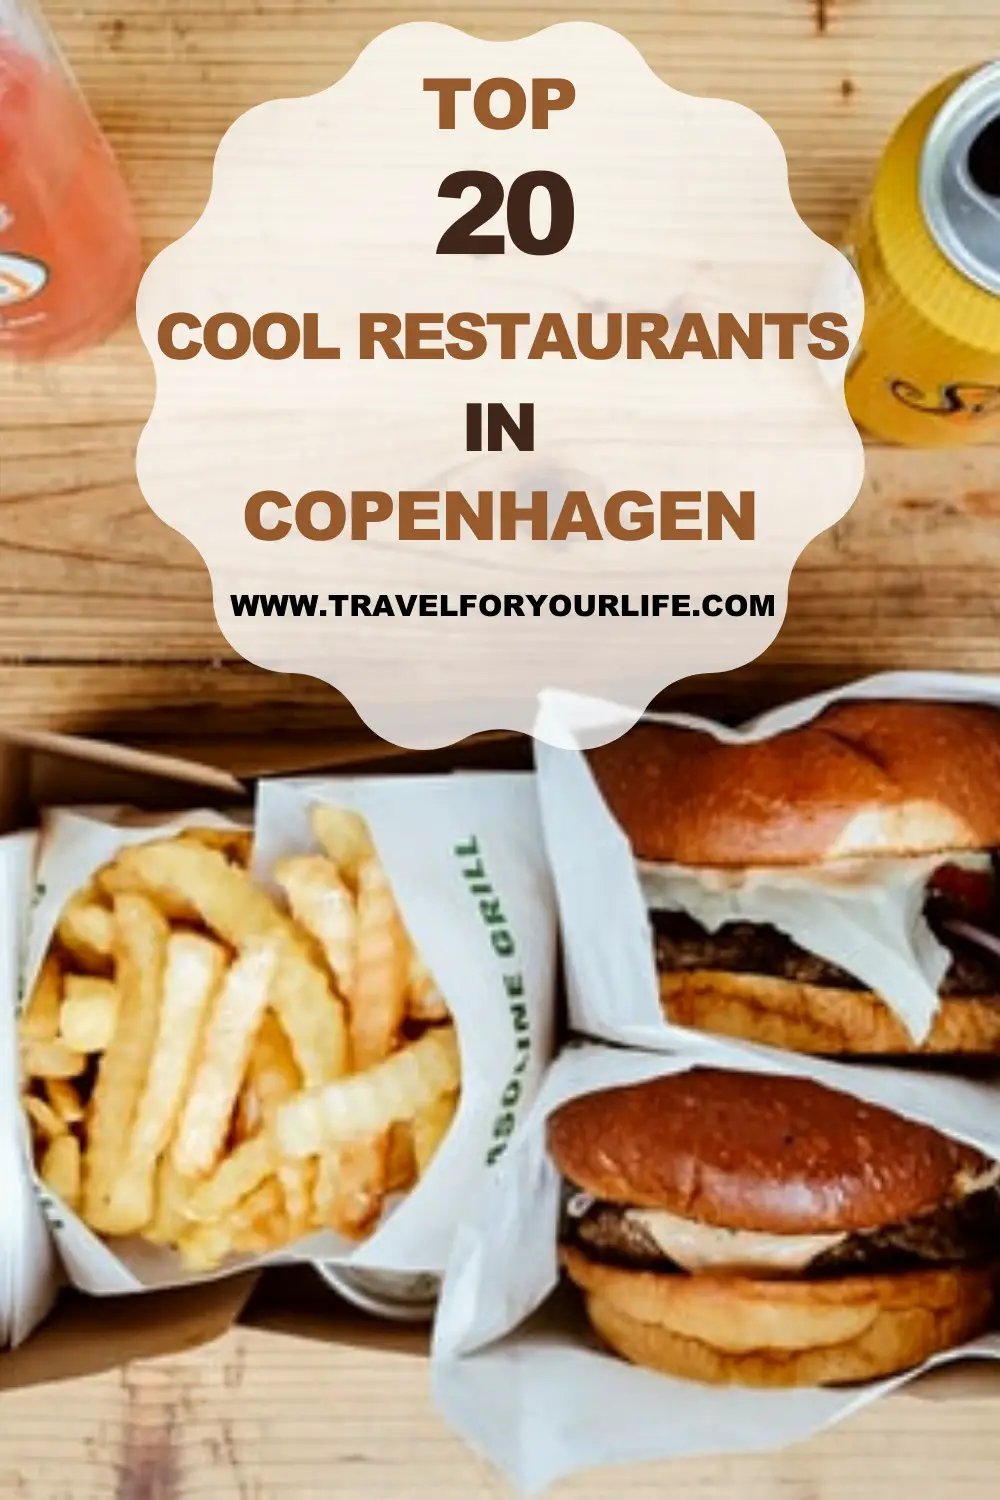 The top 20 cool restaurants in Copenhagen